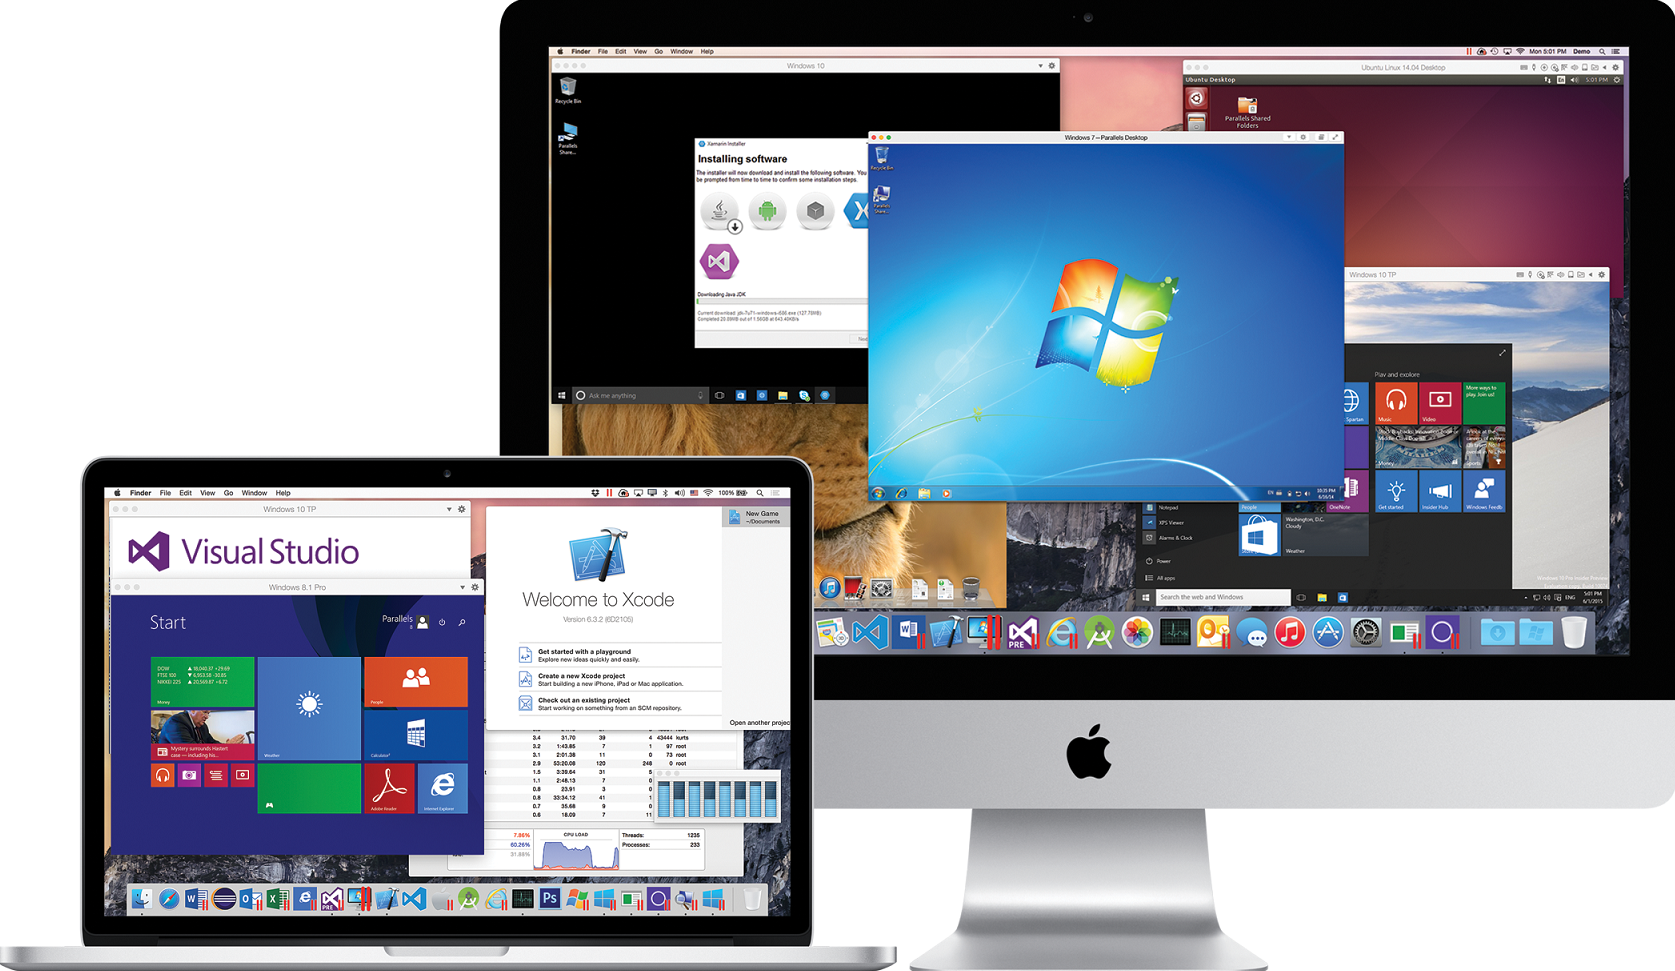 parallels desktop for mac v11.2.0.32581 business edition torrent